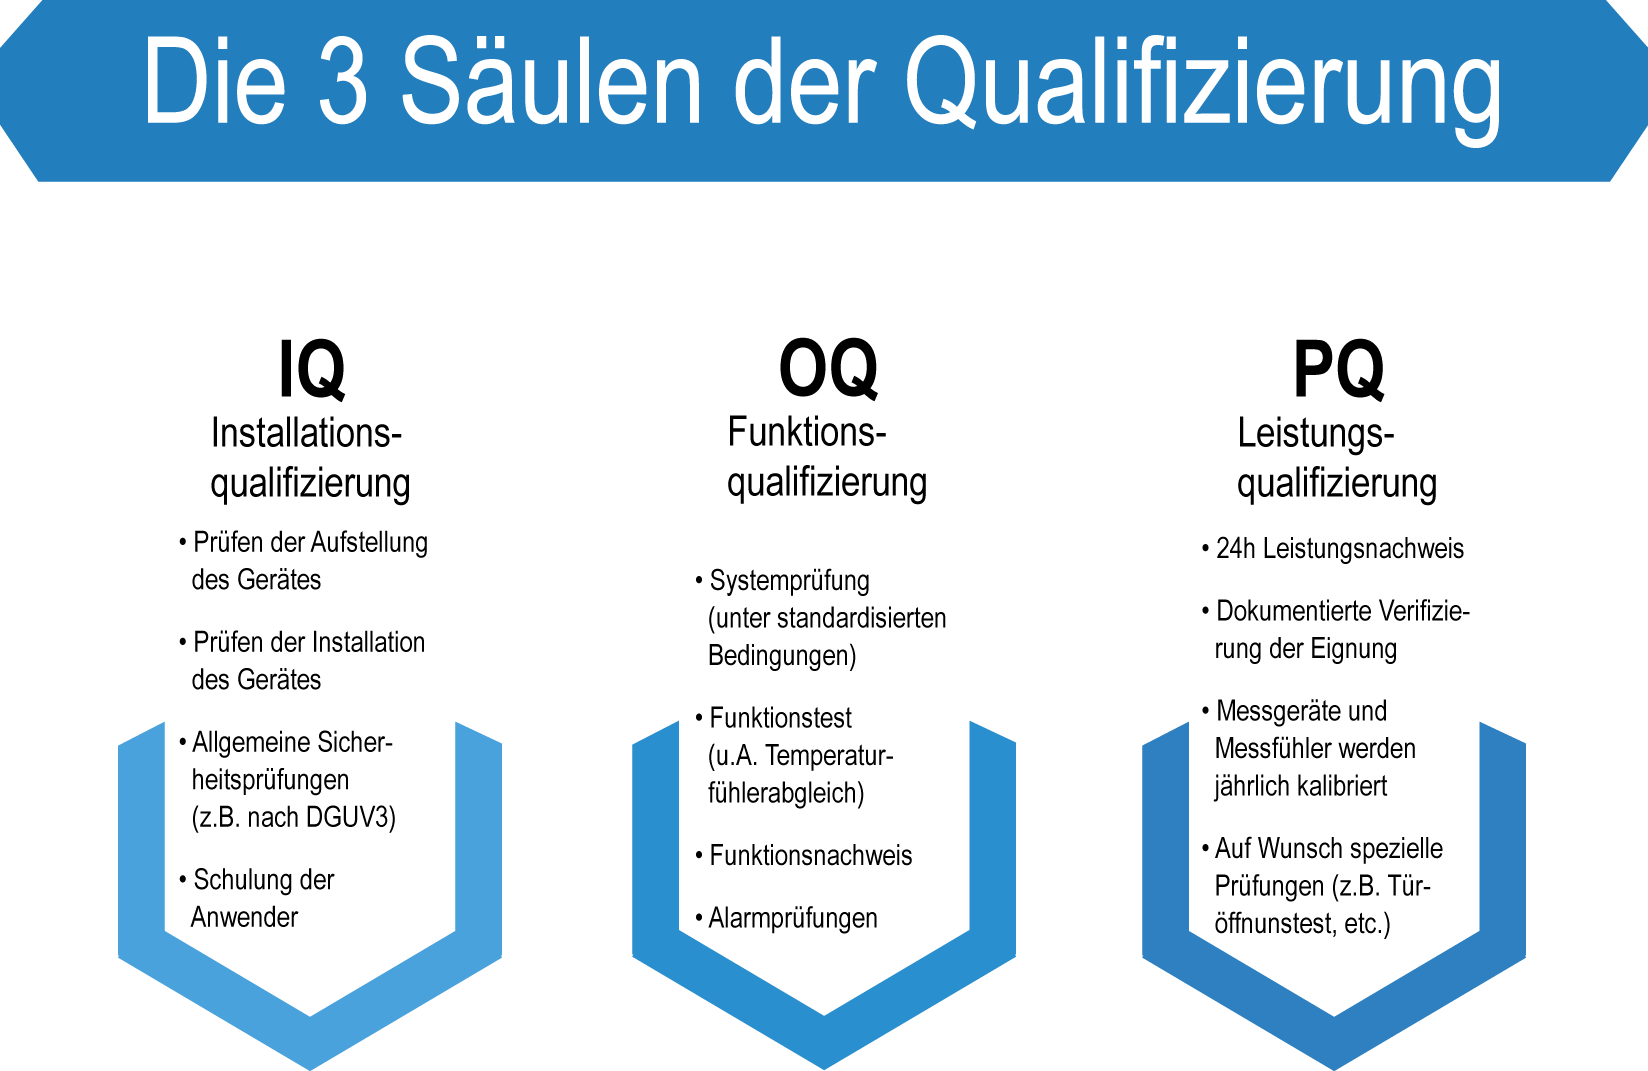 Die 3 Säulen der Qualifizierung